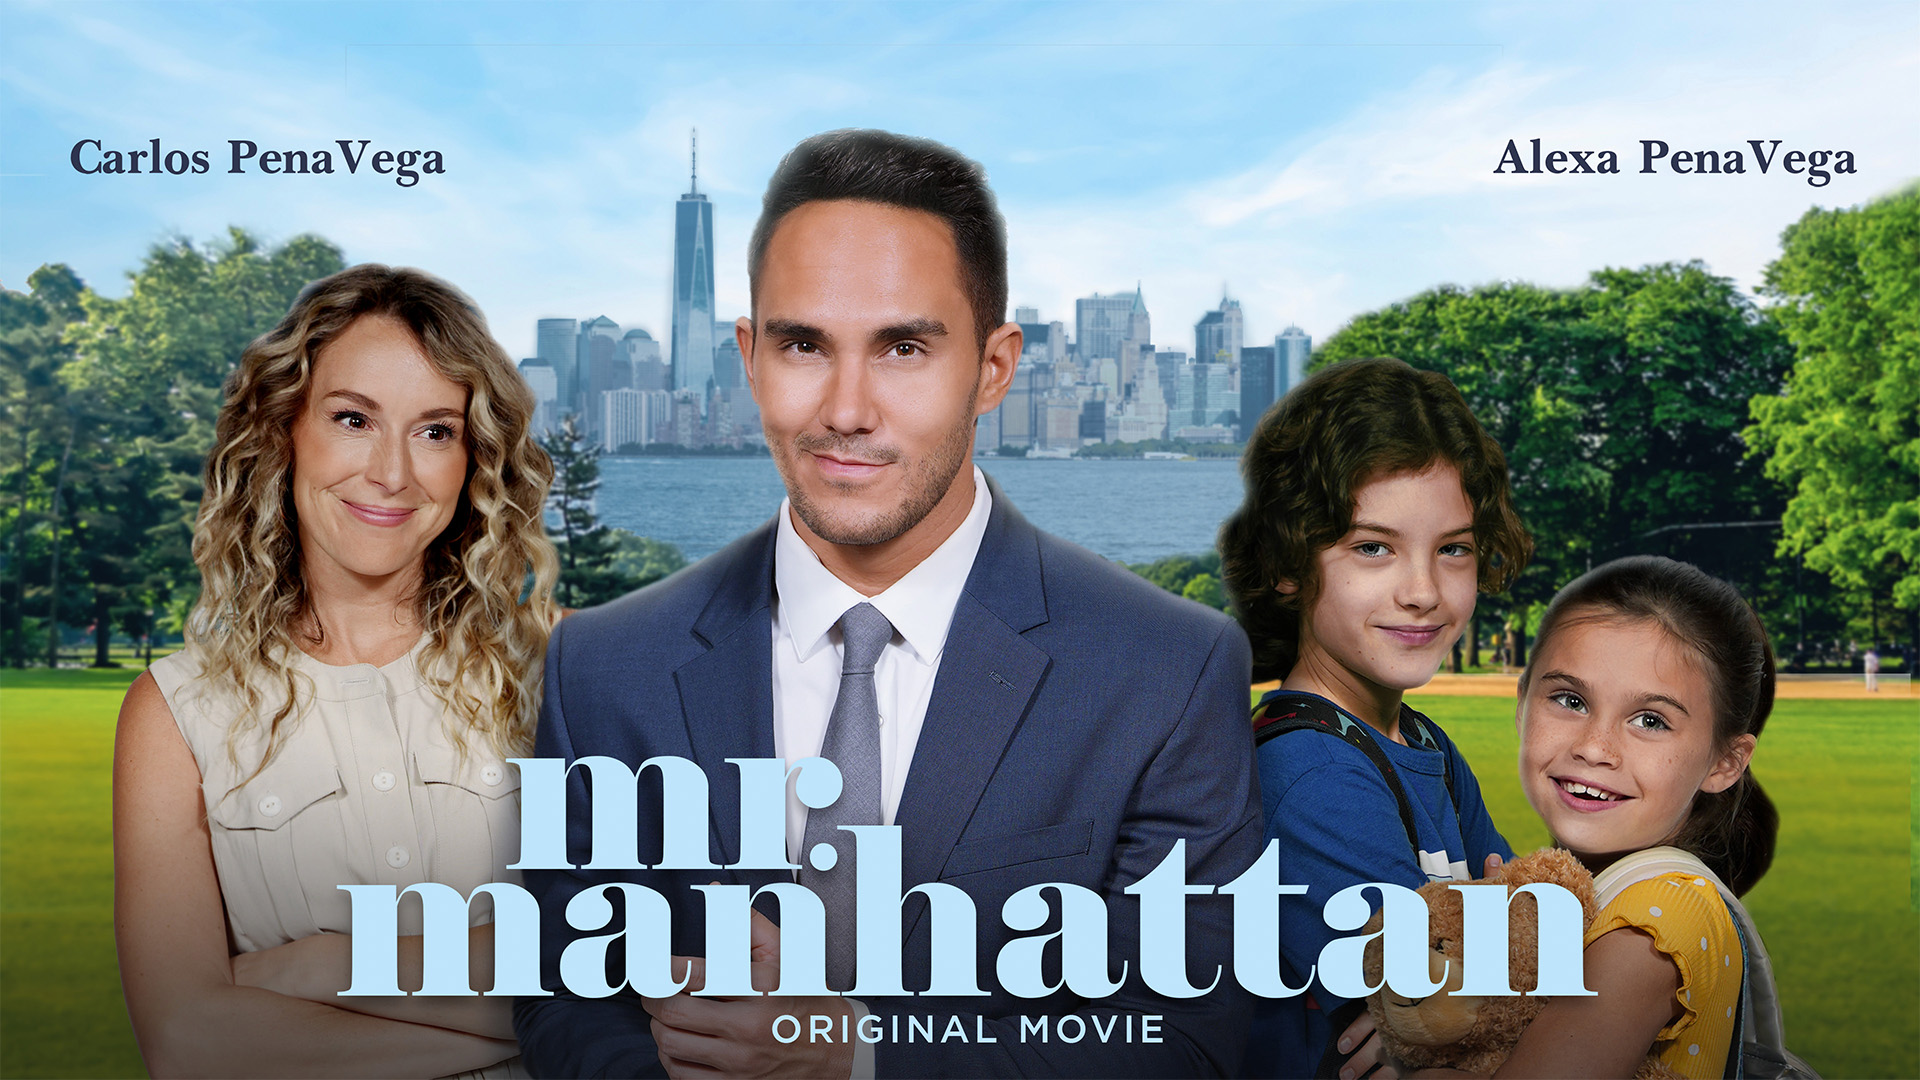 Watch - Mr. Manhattan